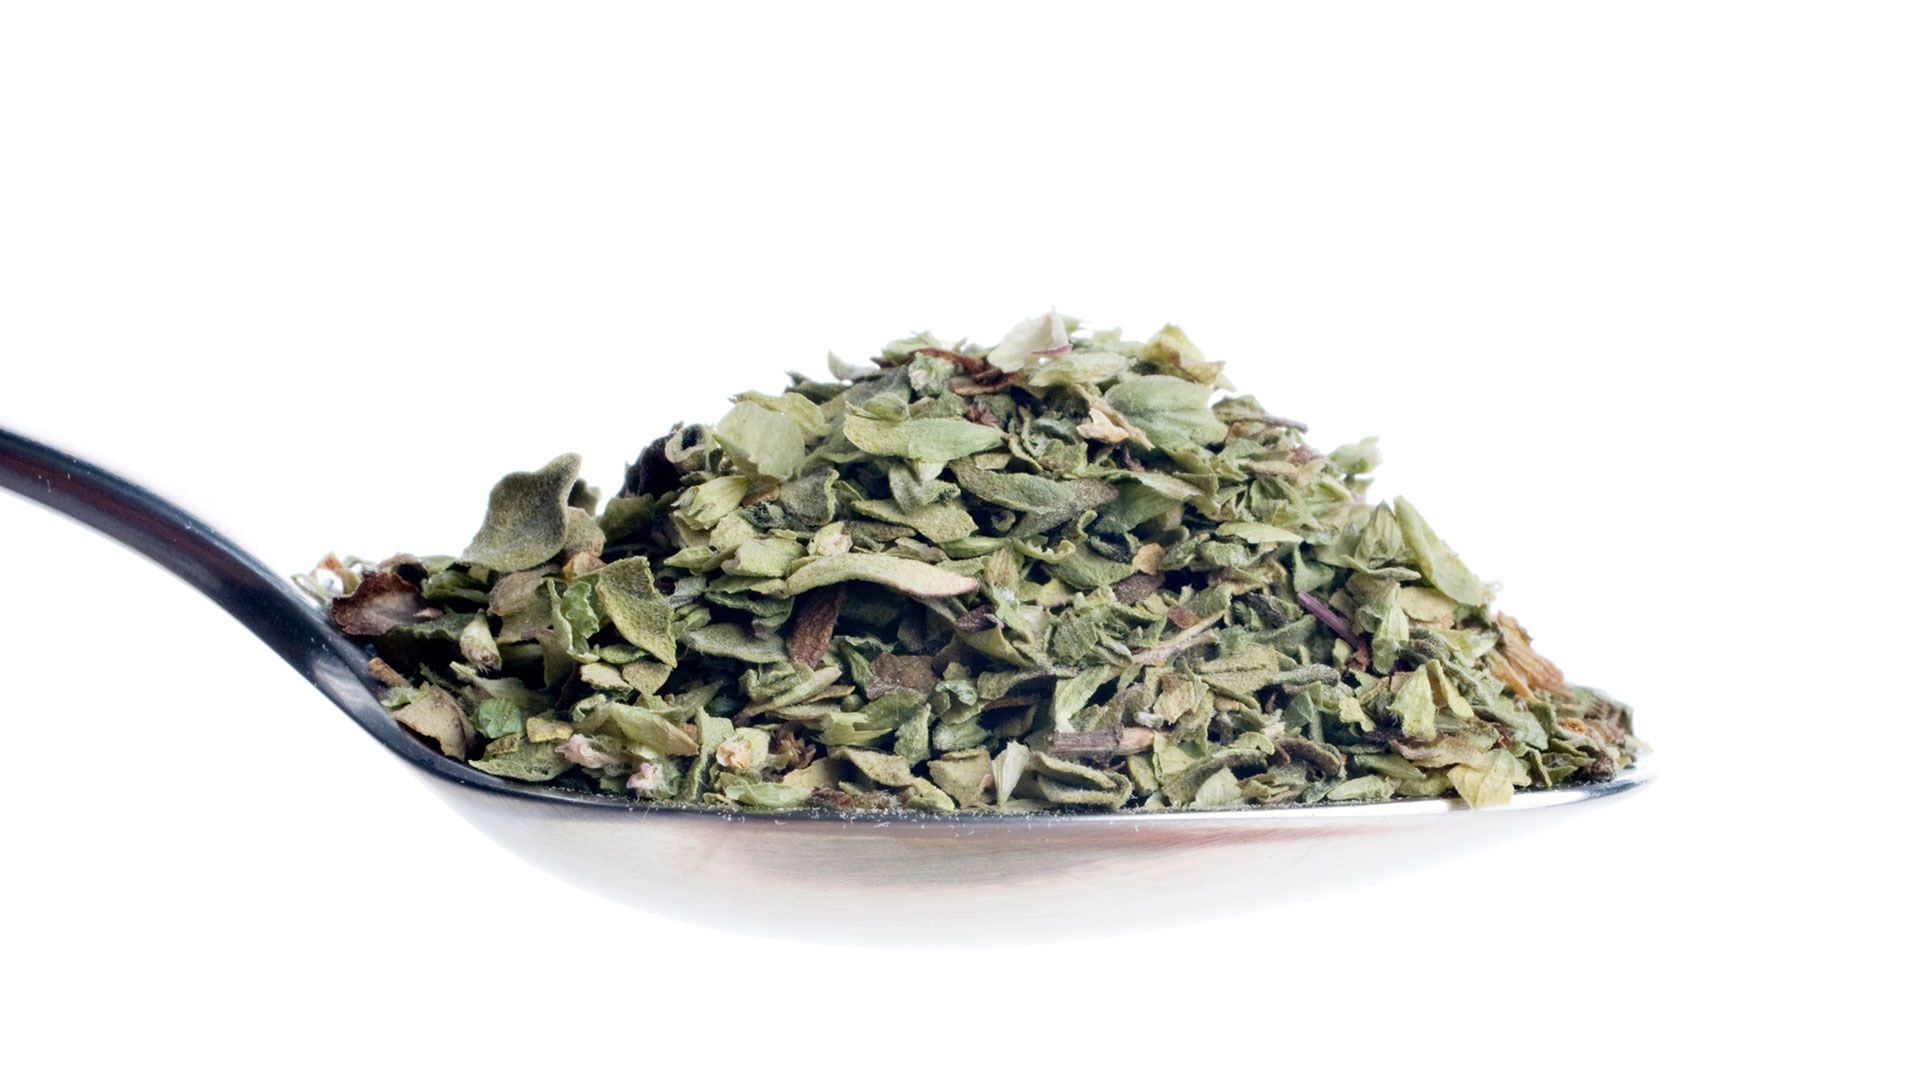 Lo más común es dejar secar las hojas de orégano para después utilizarla como ingrediente de diferentes recetas, aceites e infusiones (Getty)